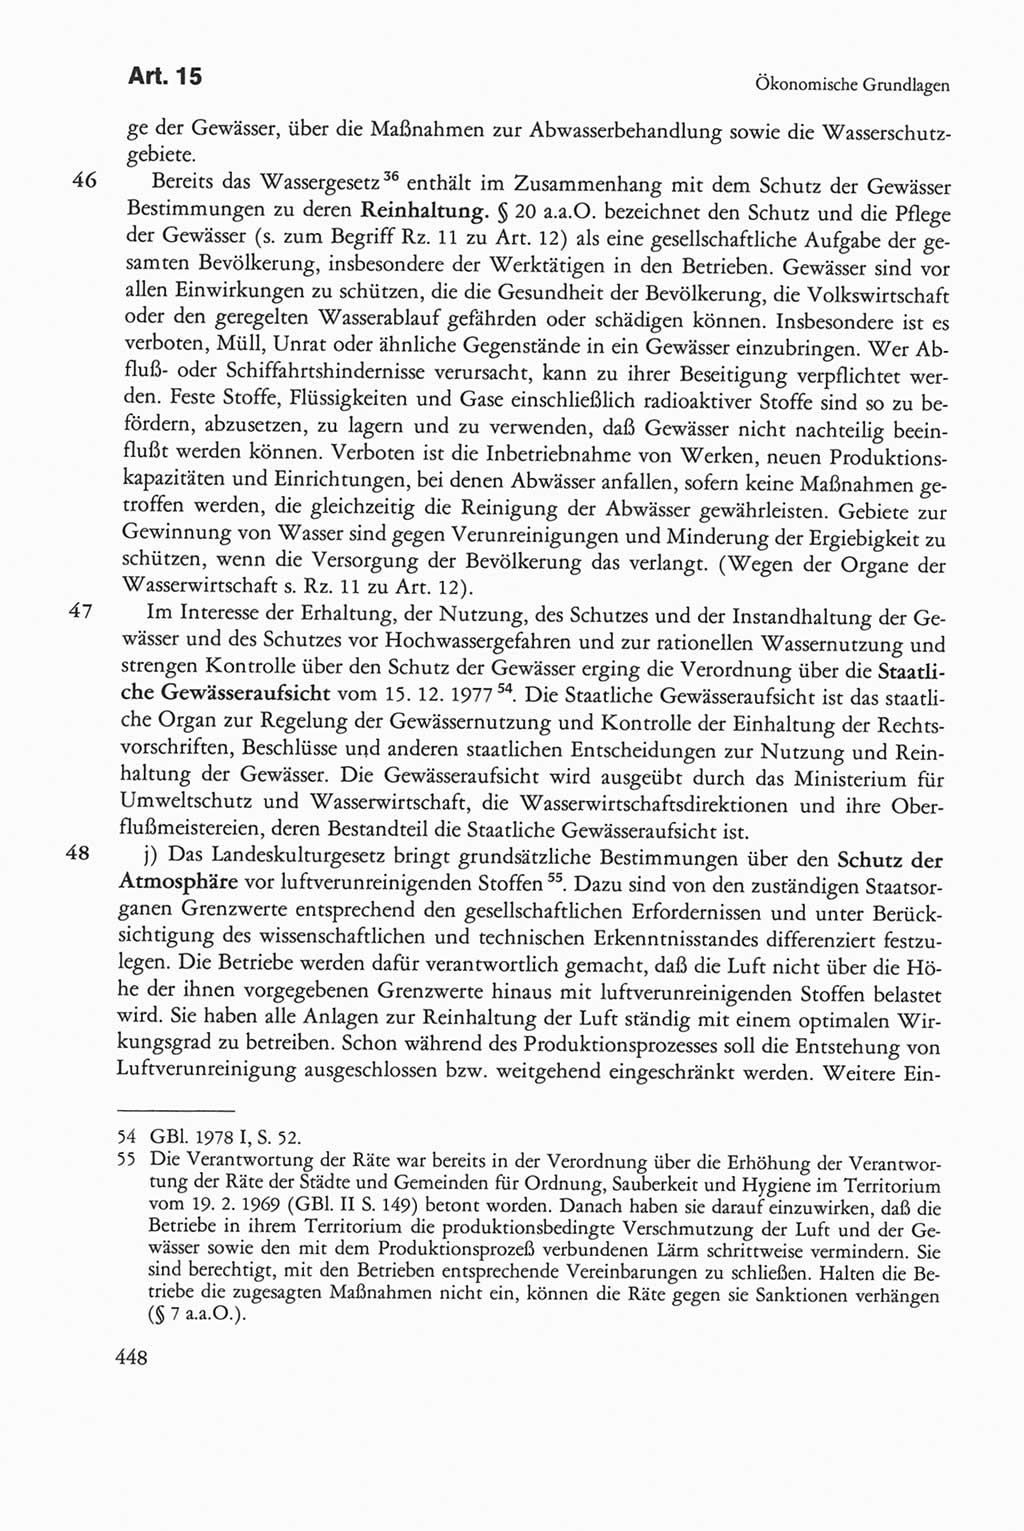 Die sozialistische Verfassung der Deutschen Demokratischen Republik (DDR), Kommentar 1982, Seite 448 (Soz. Verf. DDR Komm. 1982, S. 448)